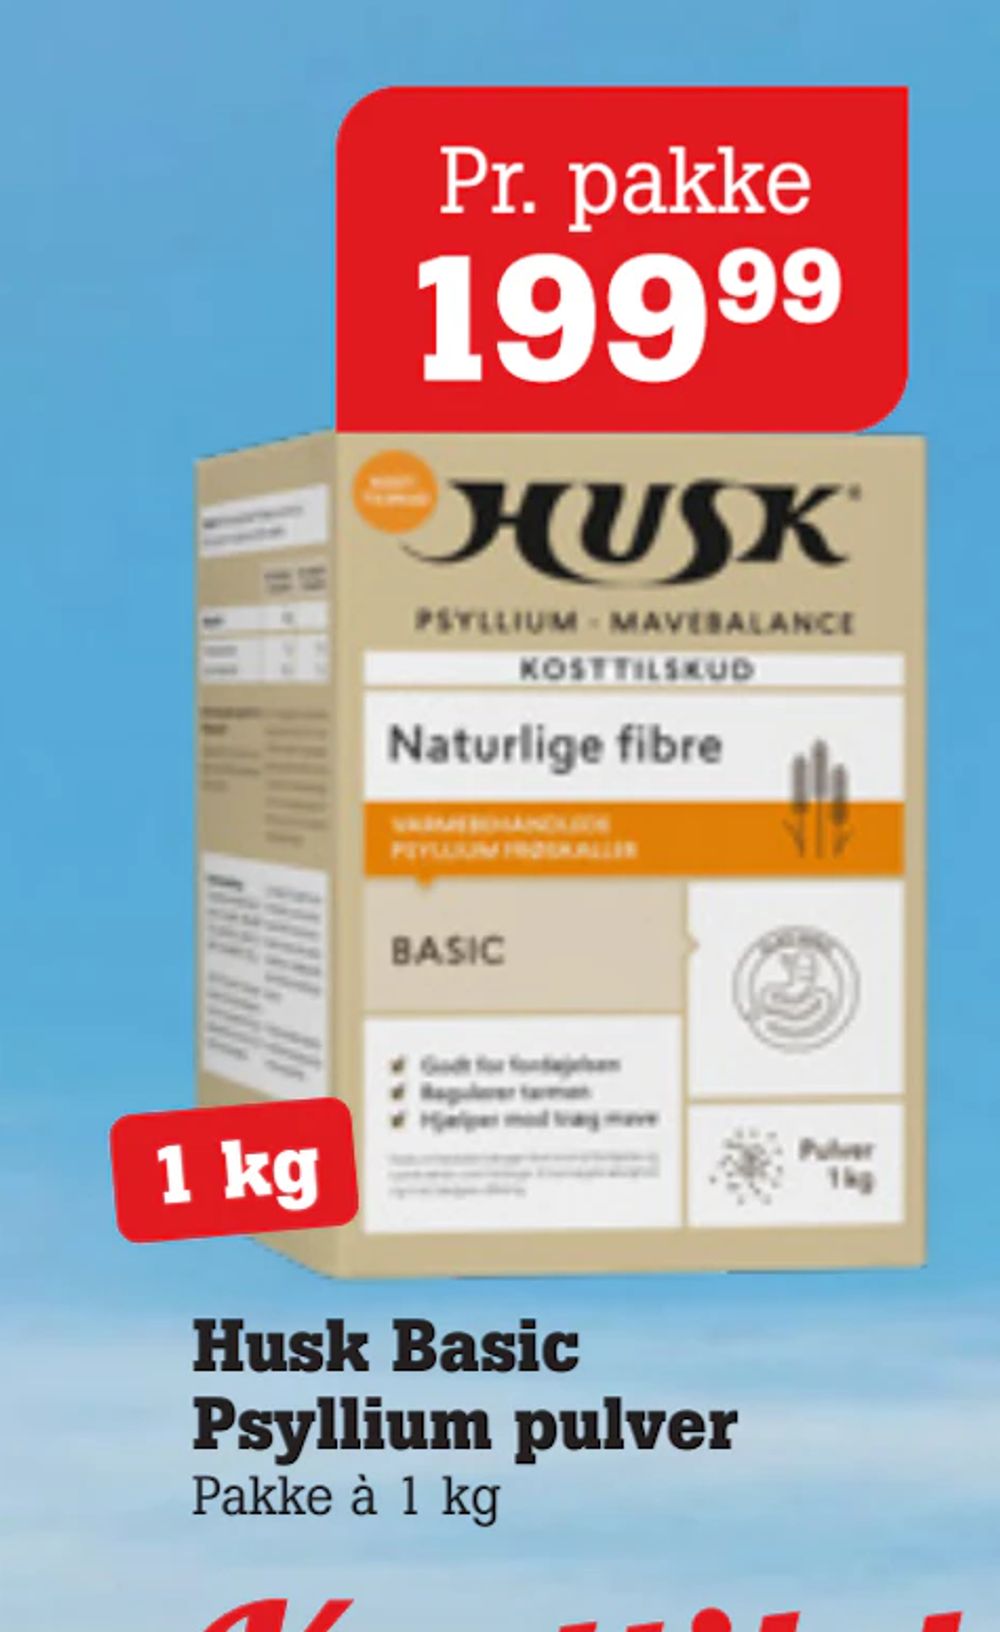 Tilbud på Husk Basic Psyllium pulver fra Poetzsch Padborg til 199,99 kr.